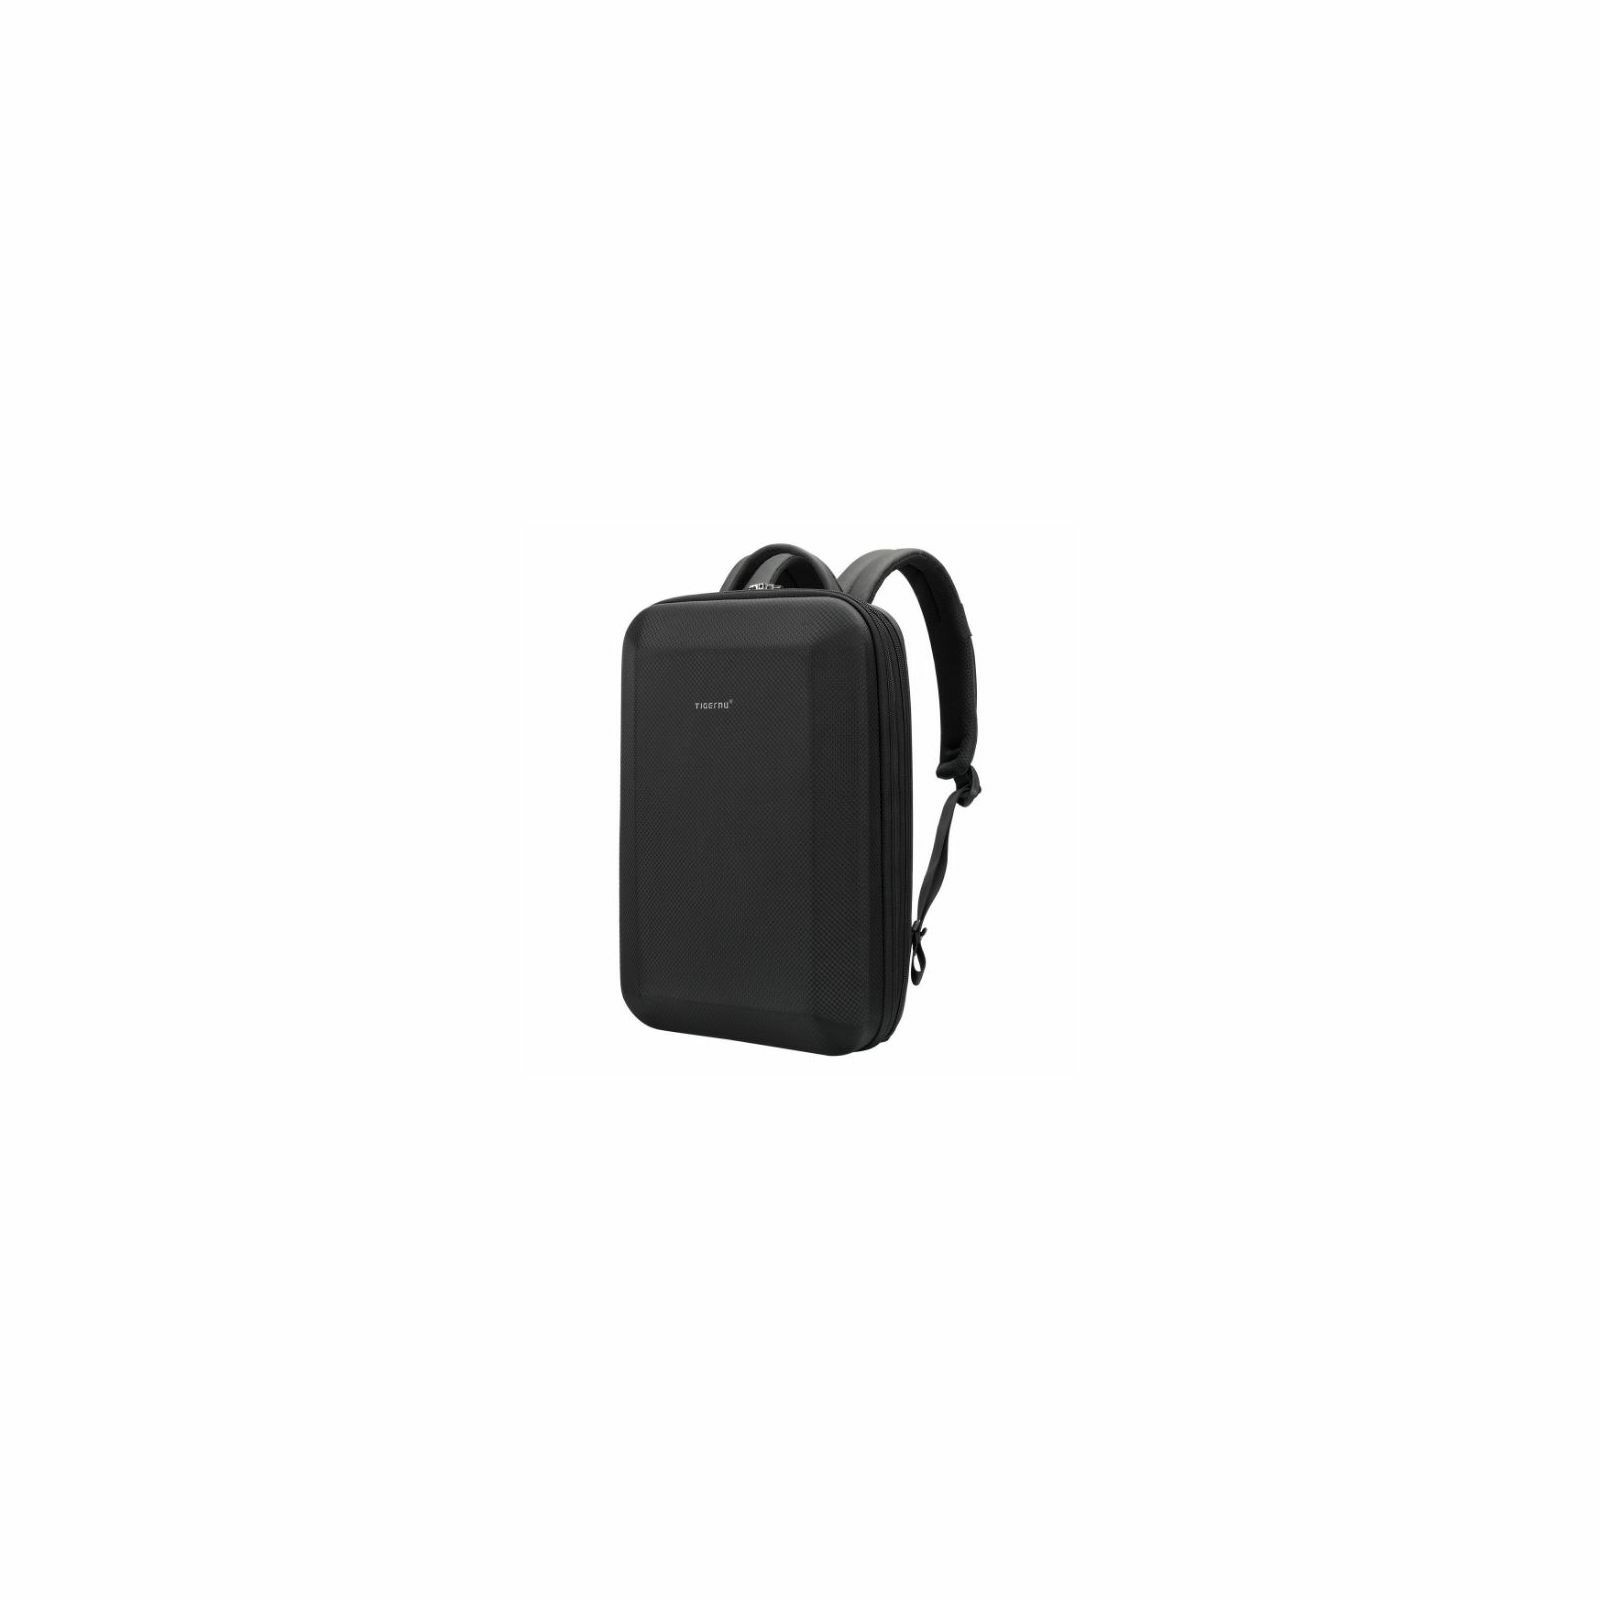 tigernu-laptop-backpack-methone-156-black-3709-6928112310173_48409.jpg